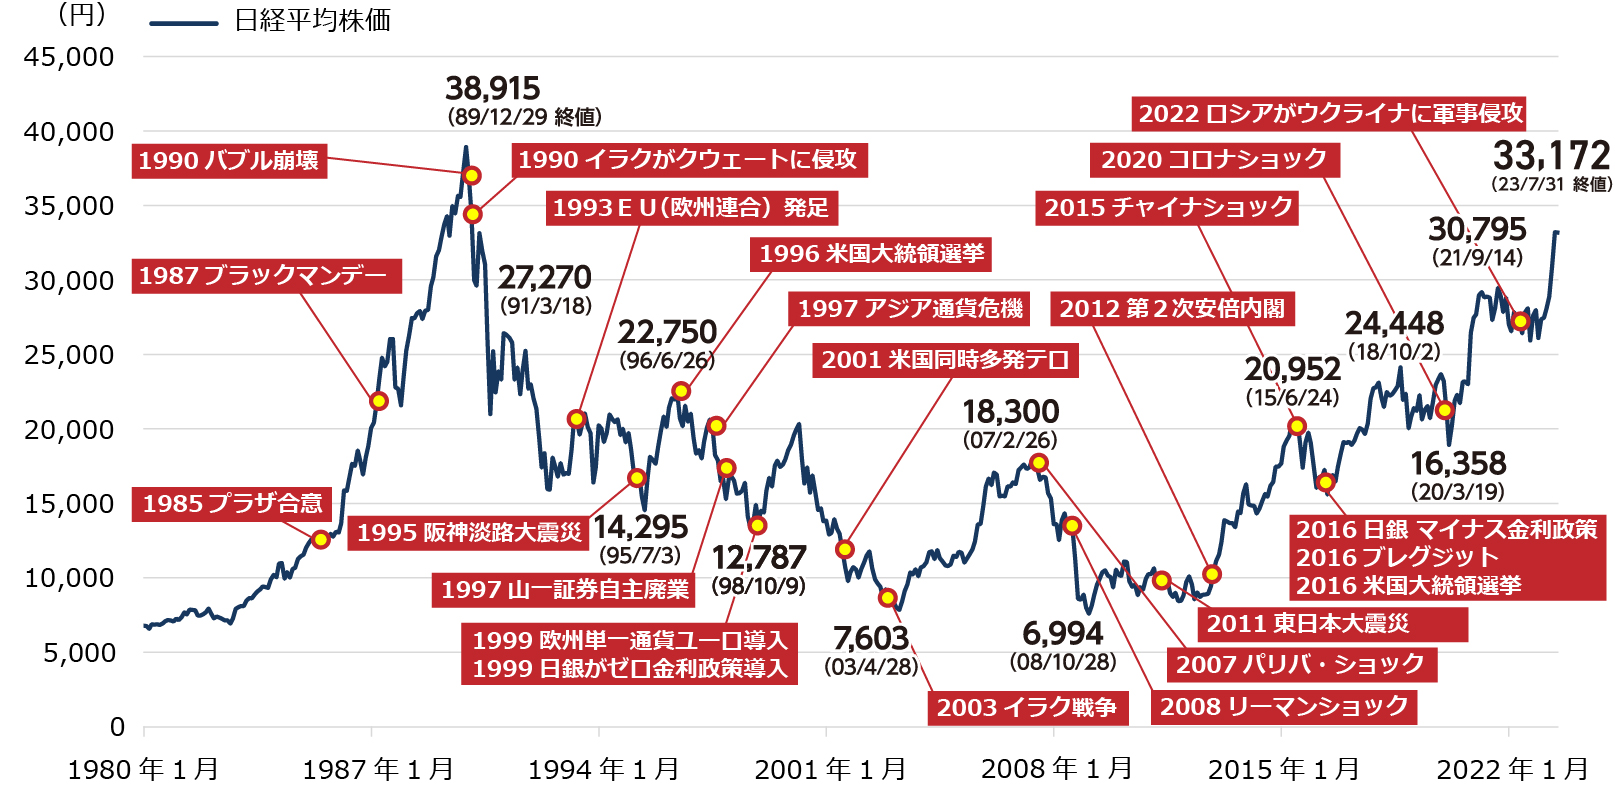 日経平均株価と過去の出来事